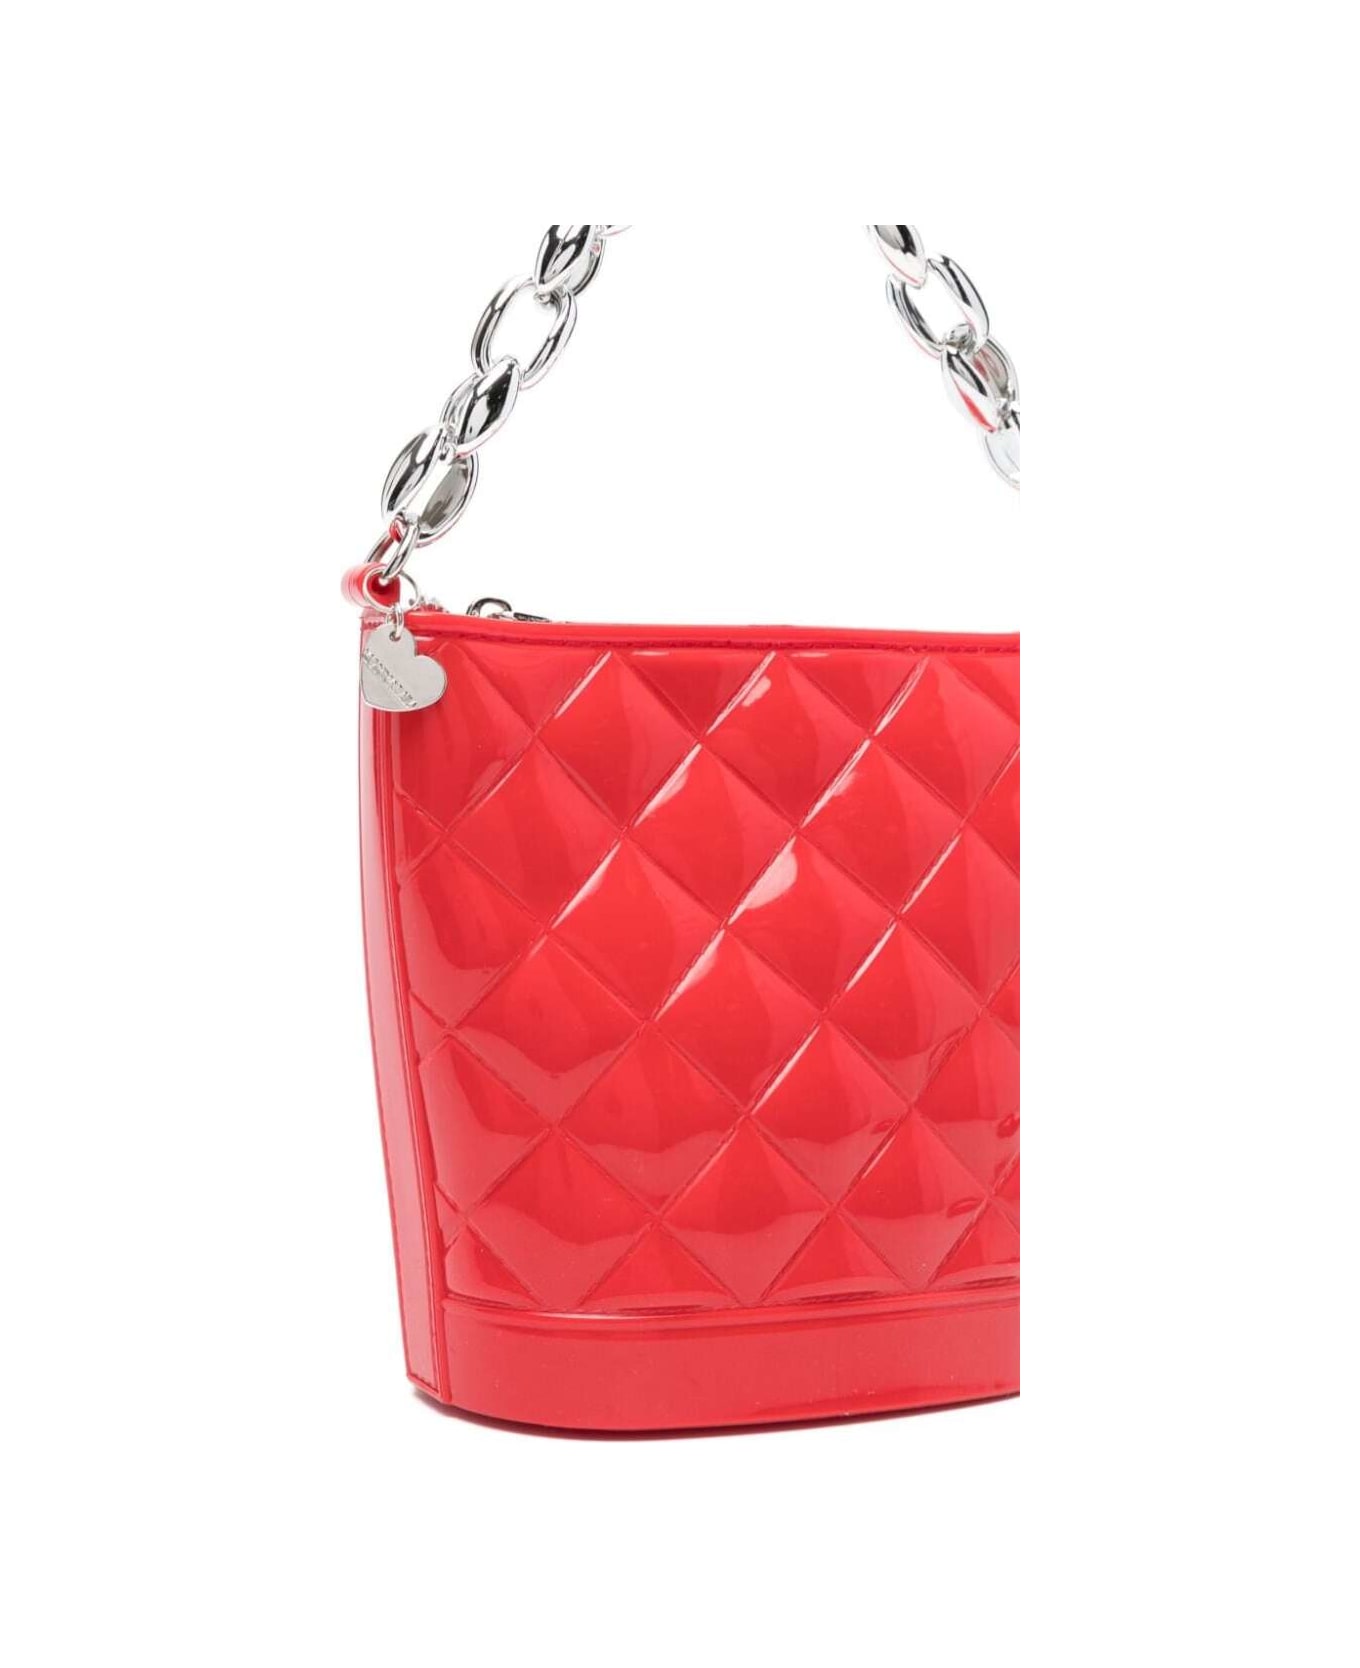 Monnalisa Red Matelassé Bucket Bag In Pvc Girl - Red